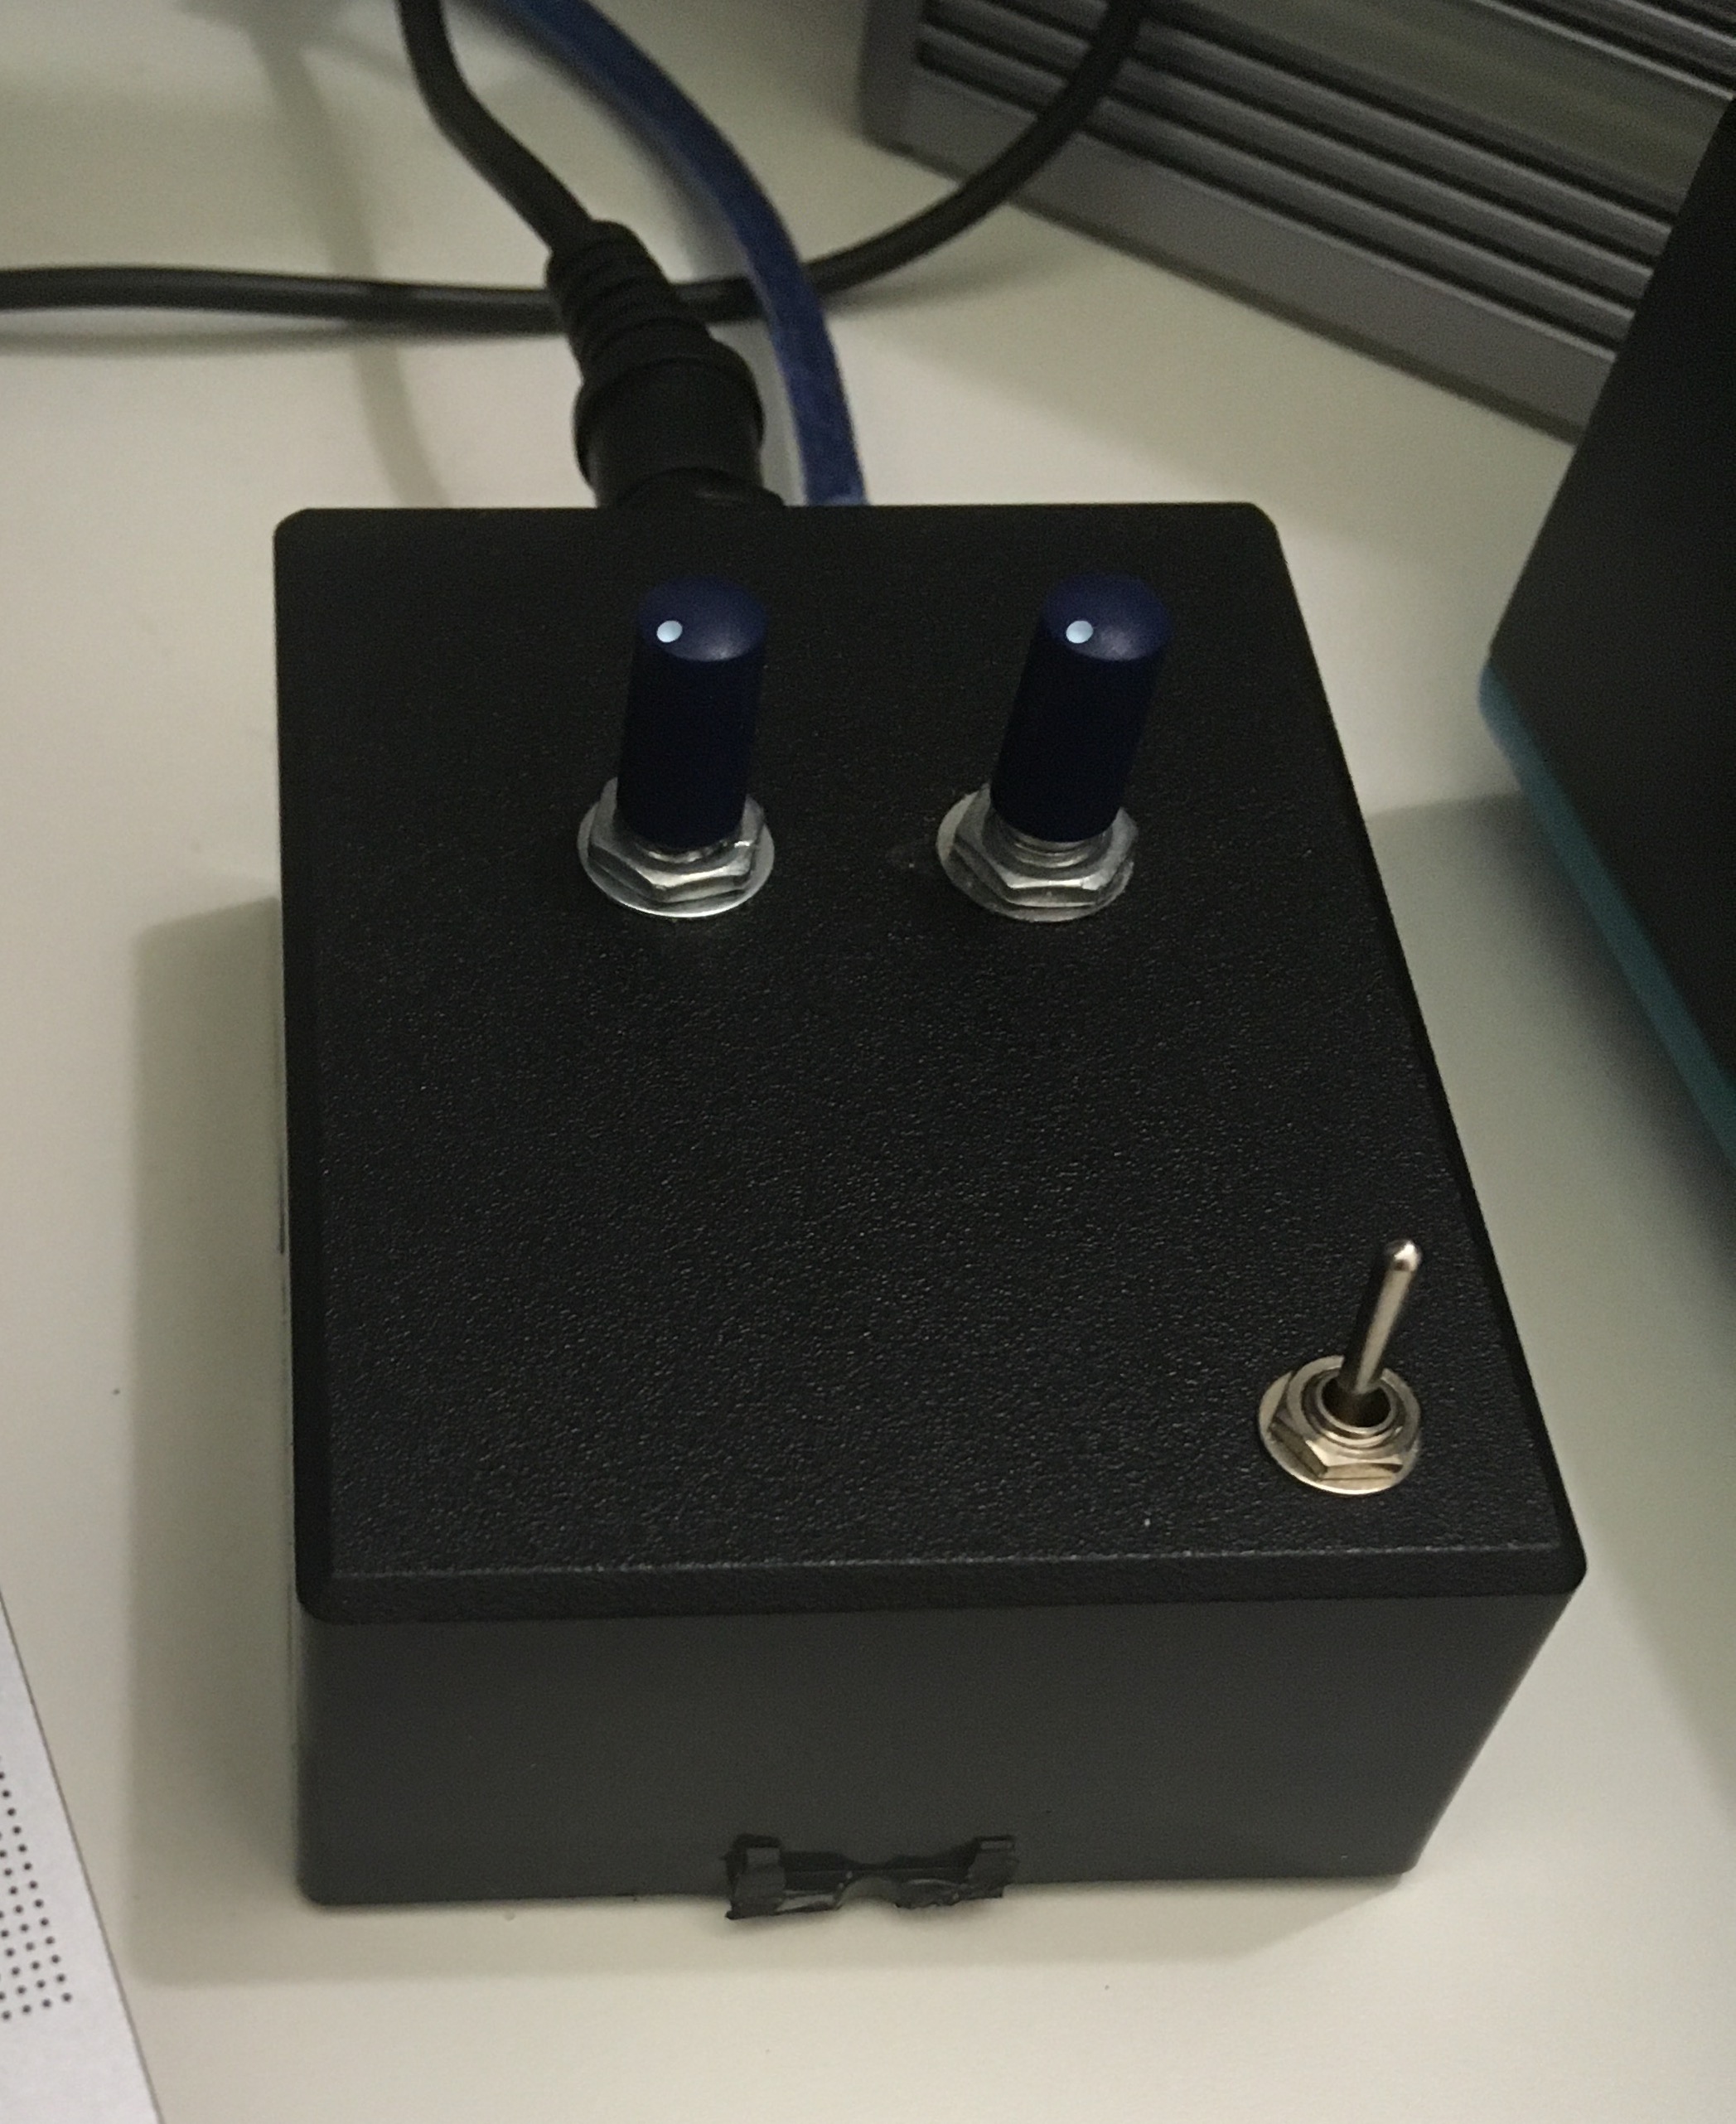 Самодельный USB MIDI адаптер для компьютера на микроконтроллере PIC18F2550